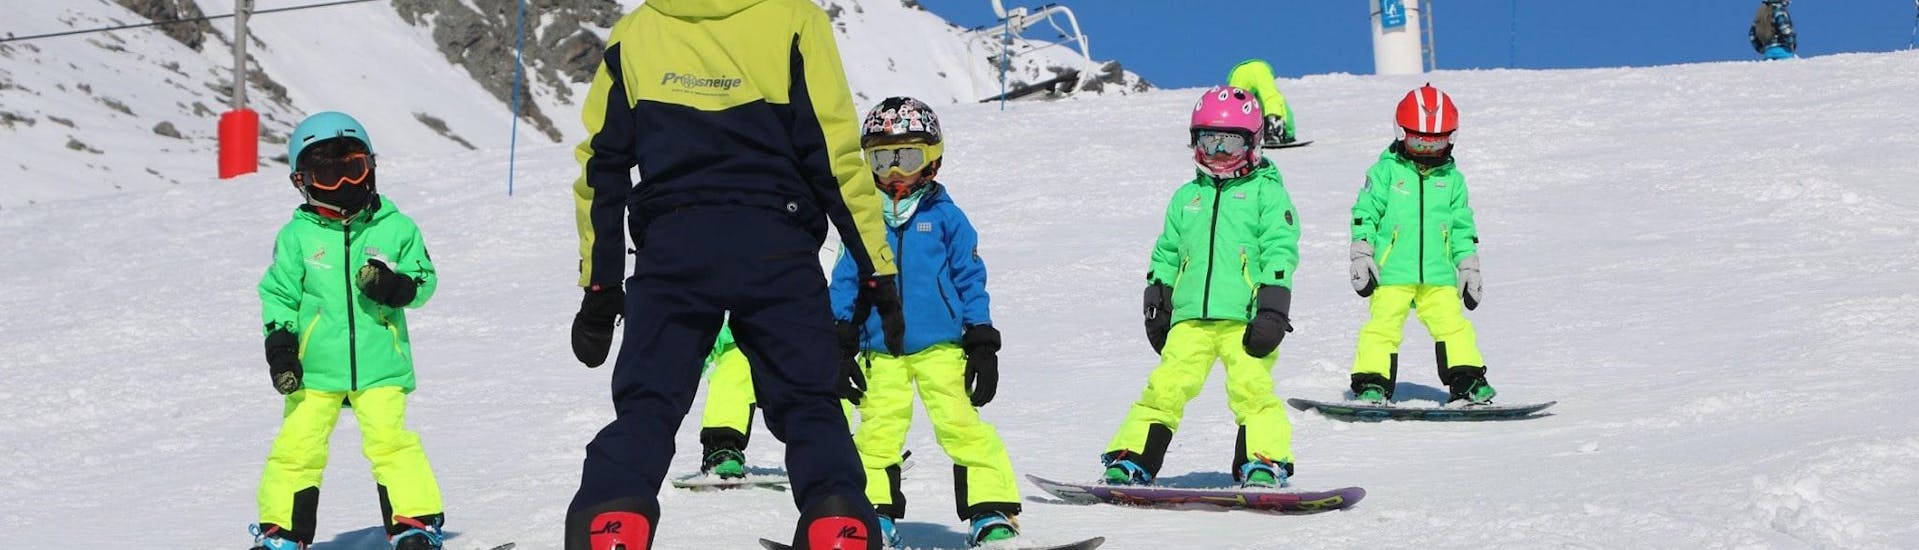 Un instructor de esquí de la escuela de esquí Prosneige Val Thorens & Les Menuires está enseñando a niños sonrientes, durante las clases de snowboard para niños de todas las edades y todos los niveles.